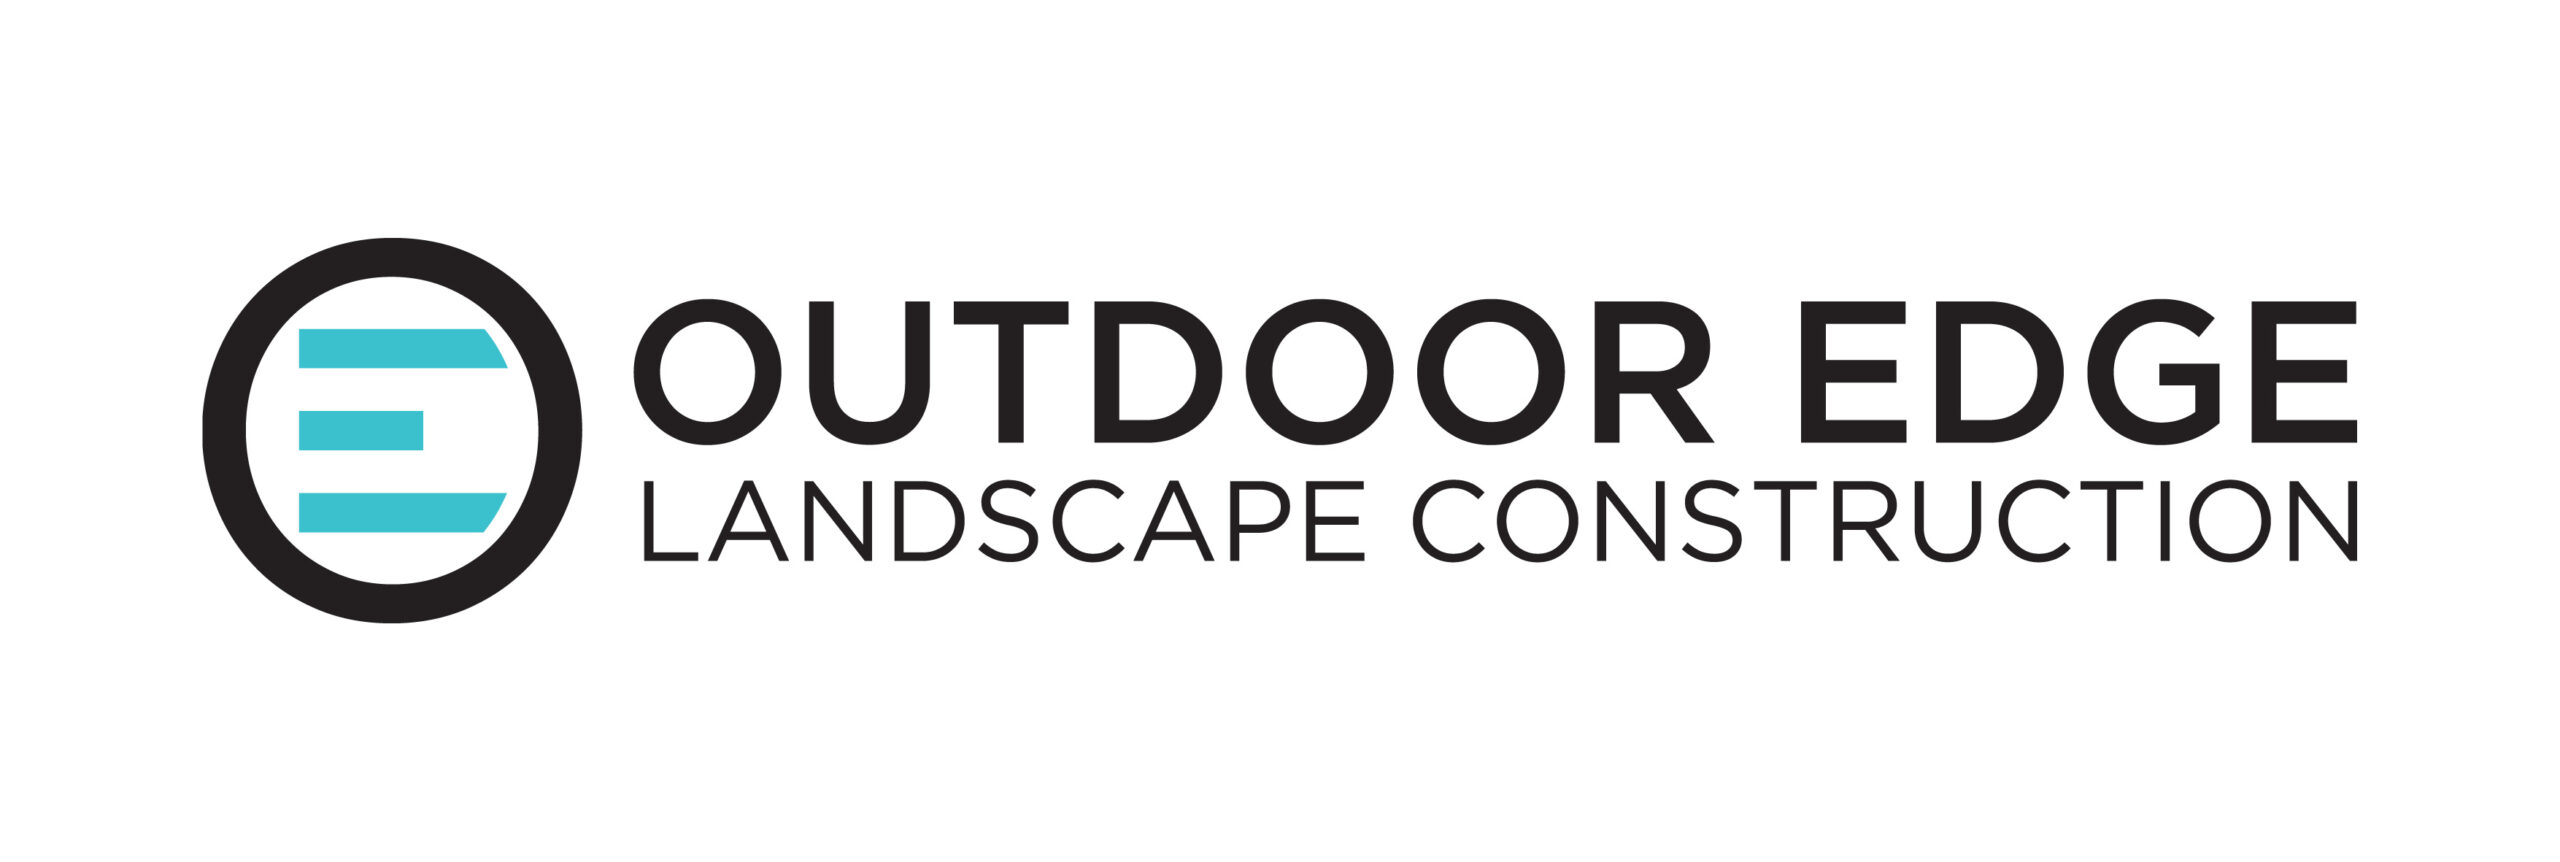 Outdoor Edge Landscape Construction